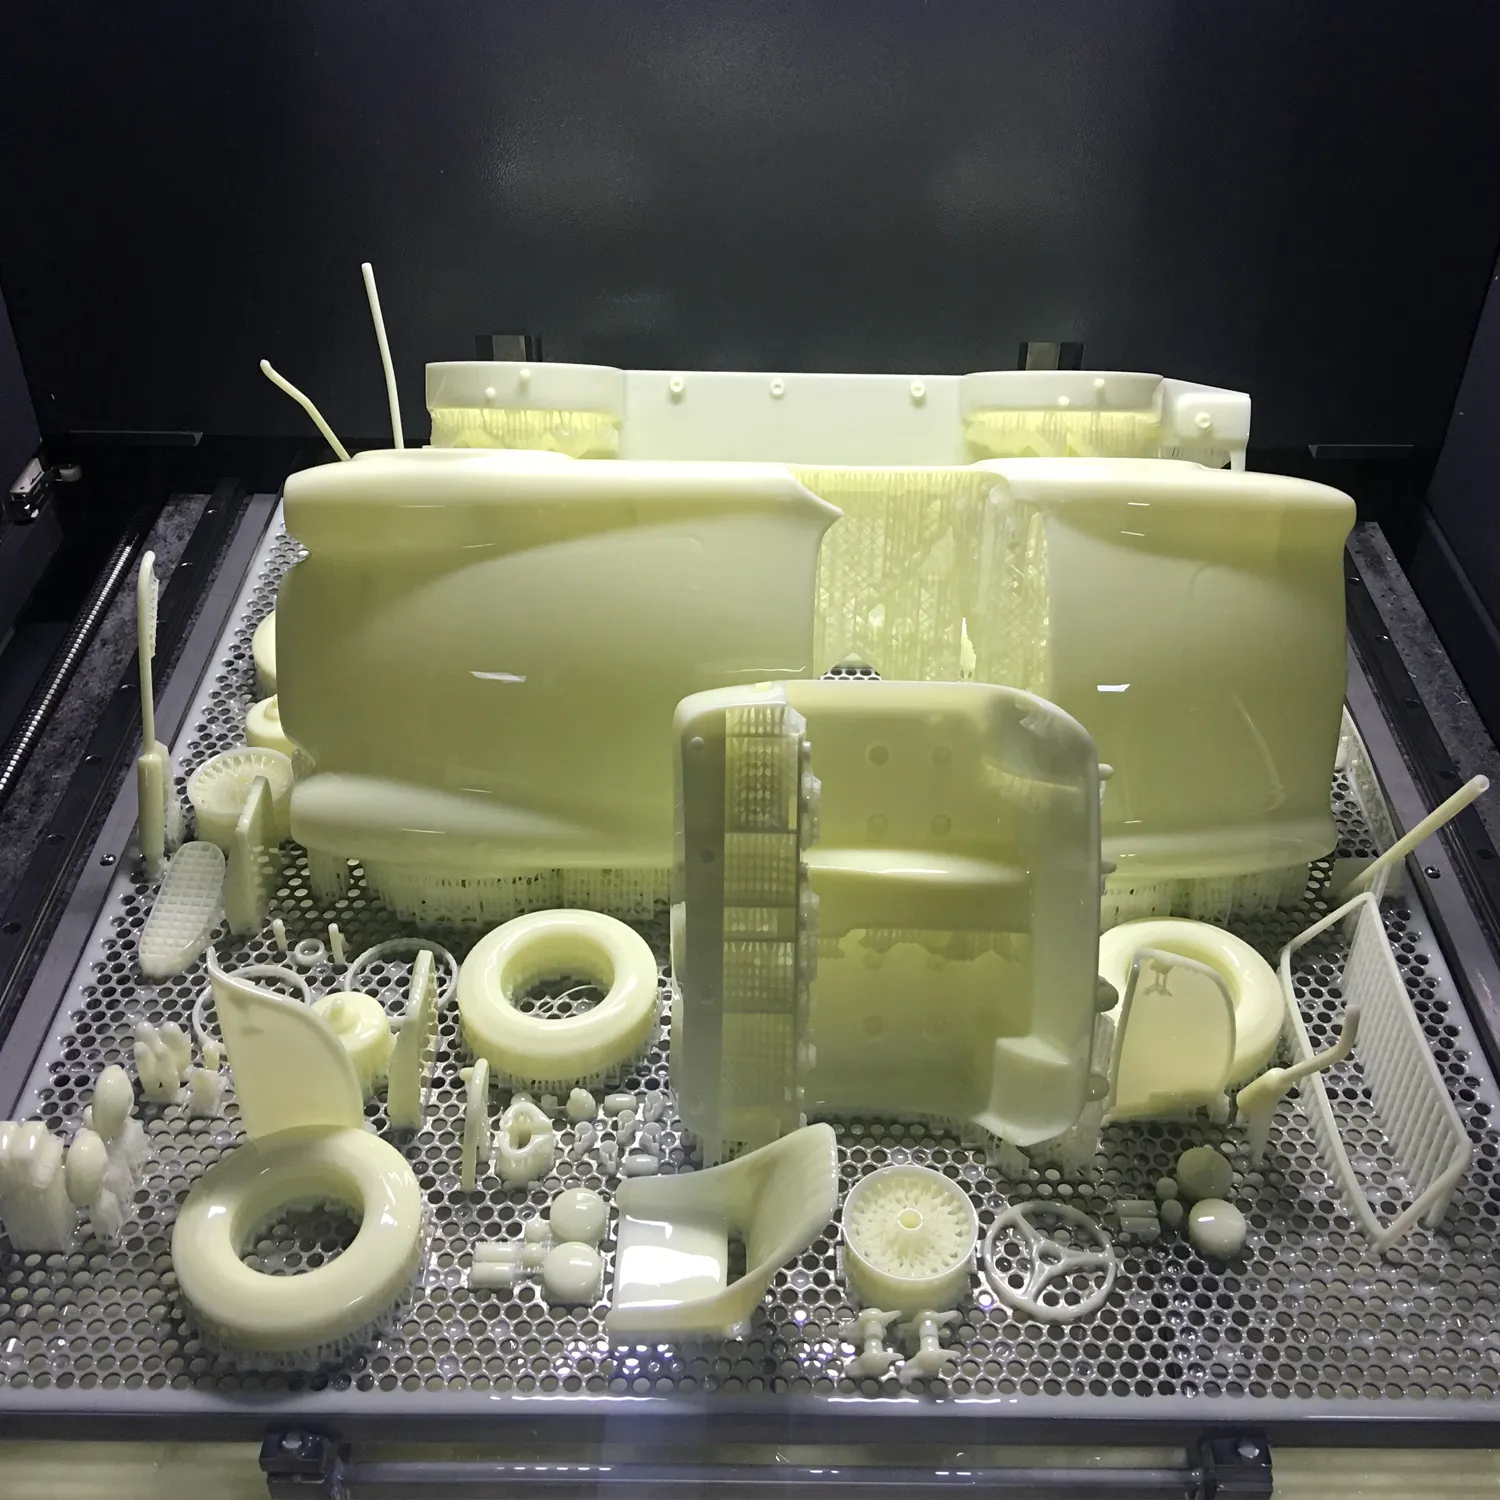 ZS пользовательские 3D печать прототип обеспечивают 3D принтер быстрый прототип для взрослых